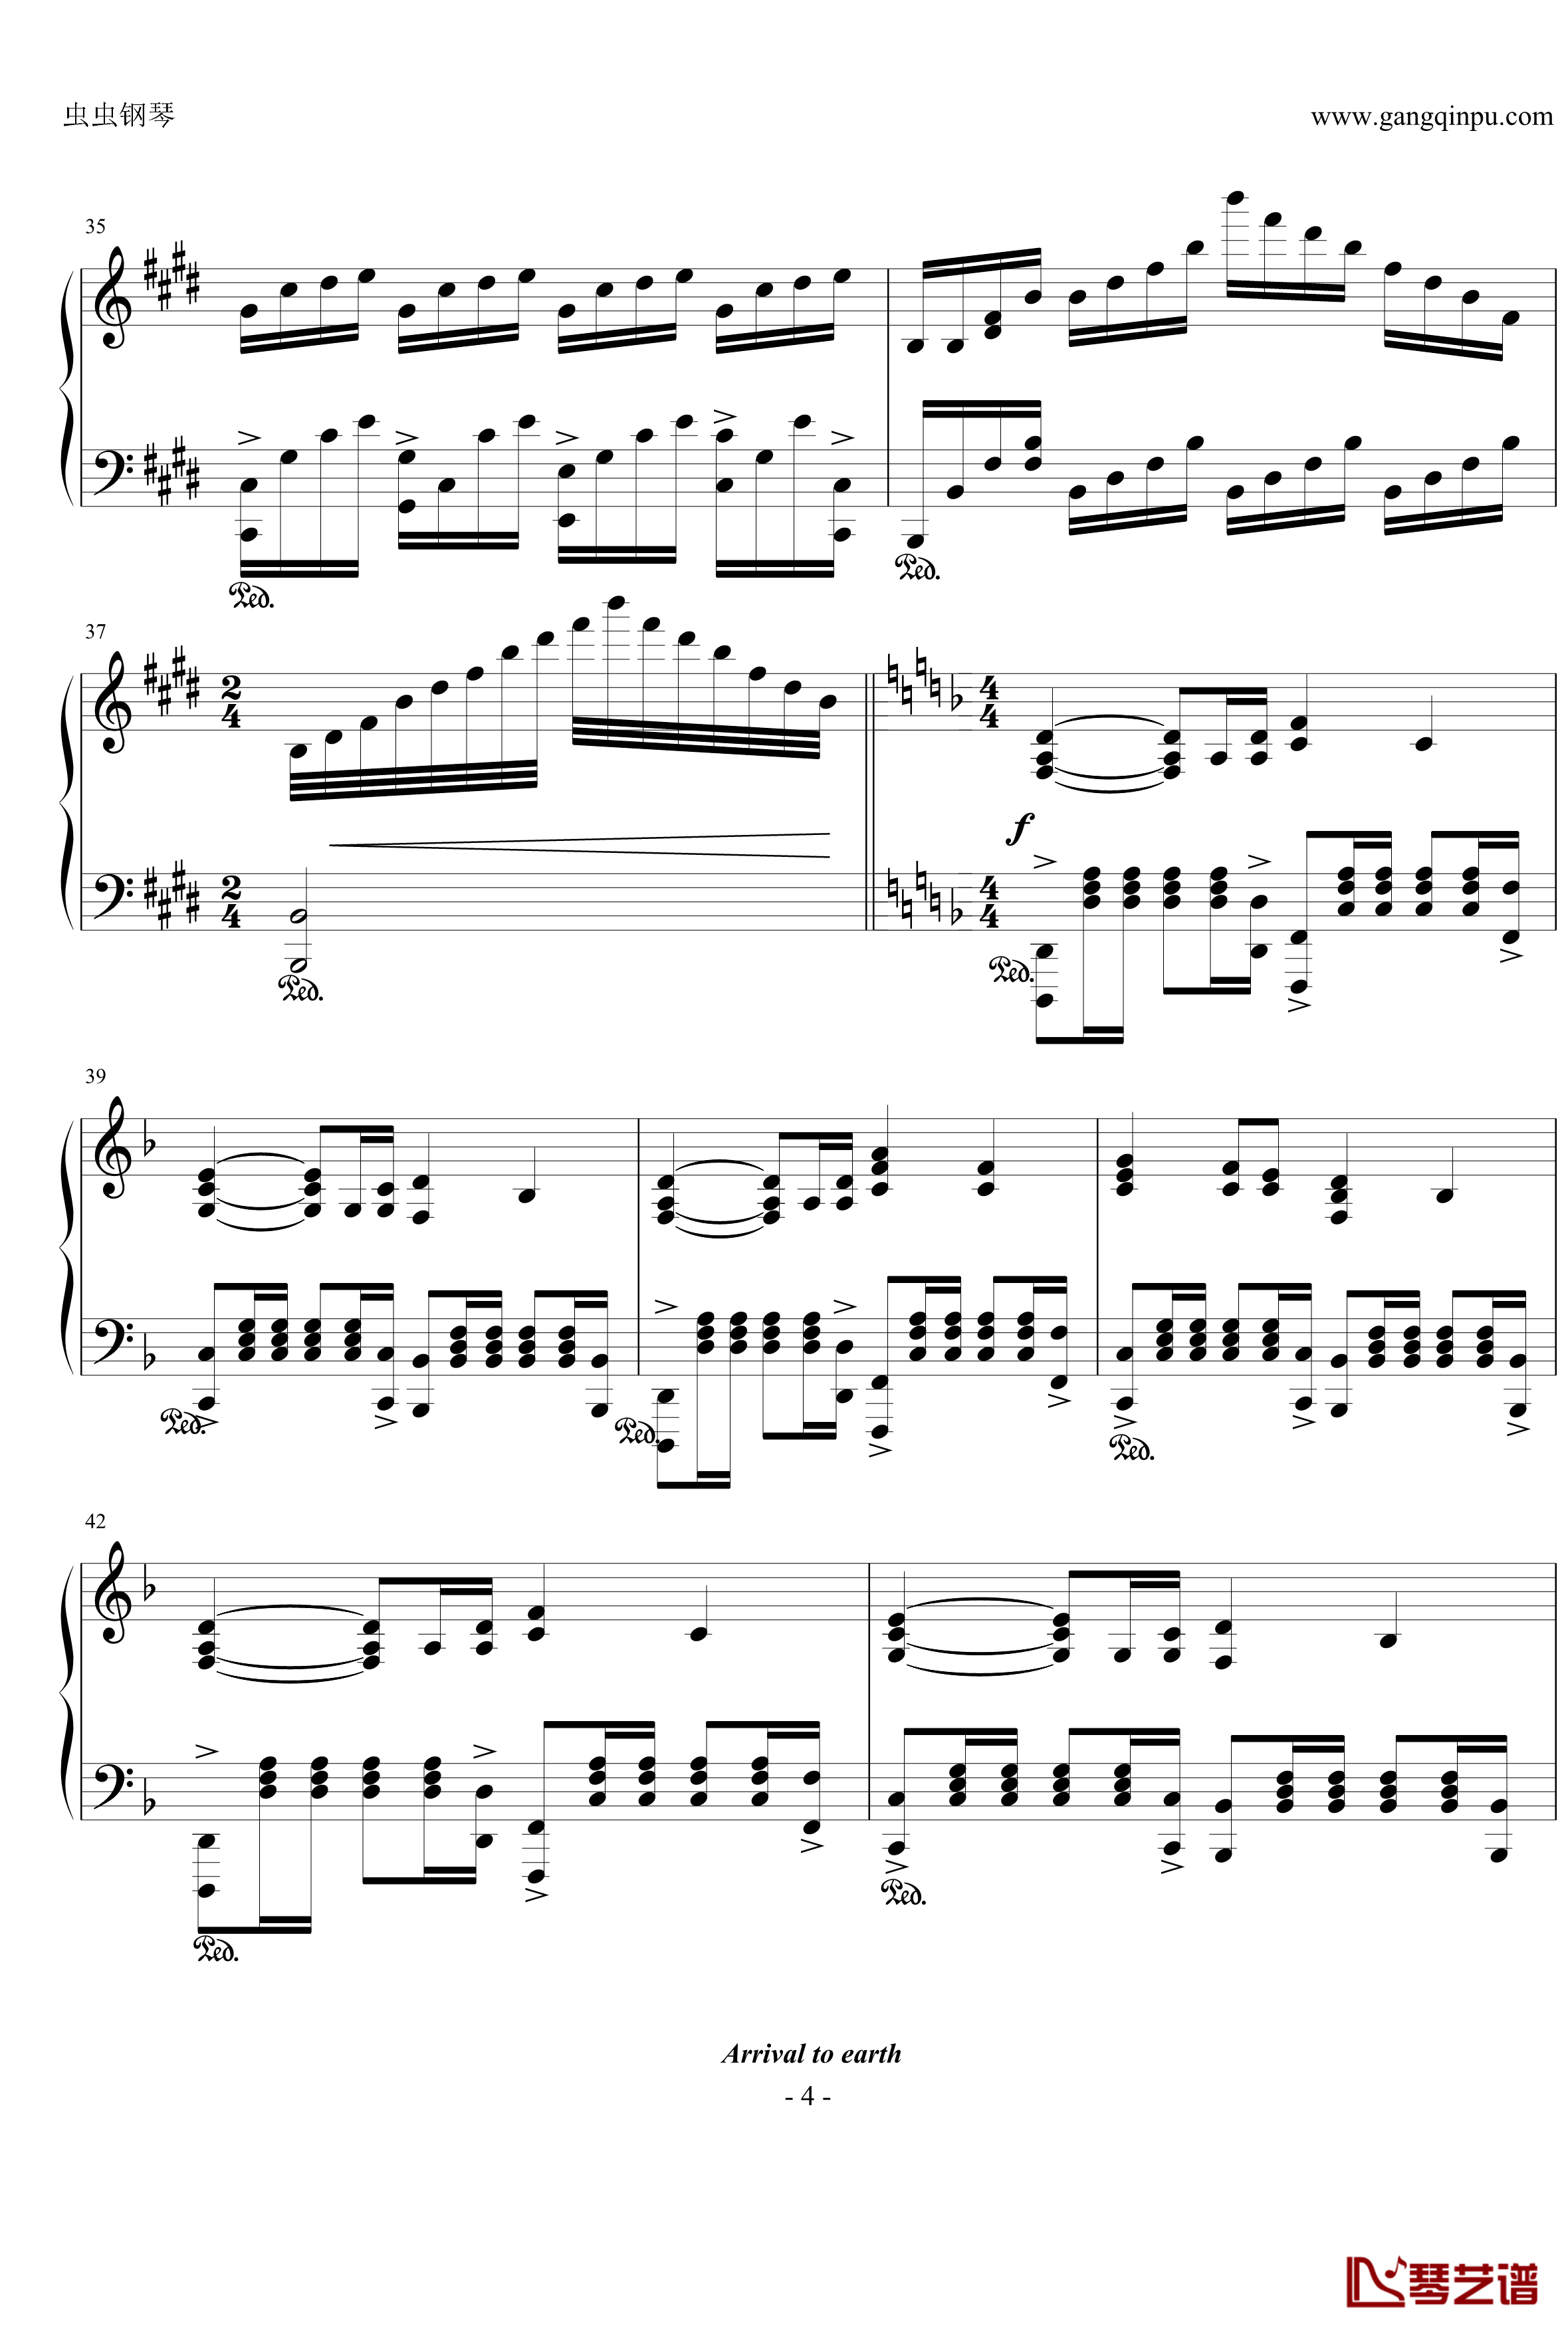 变形金刚钢琴谱4